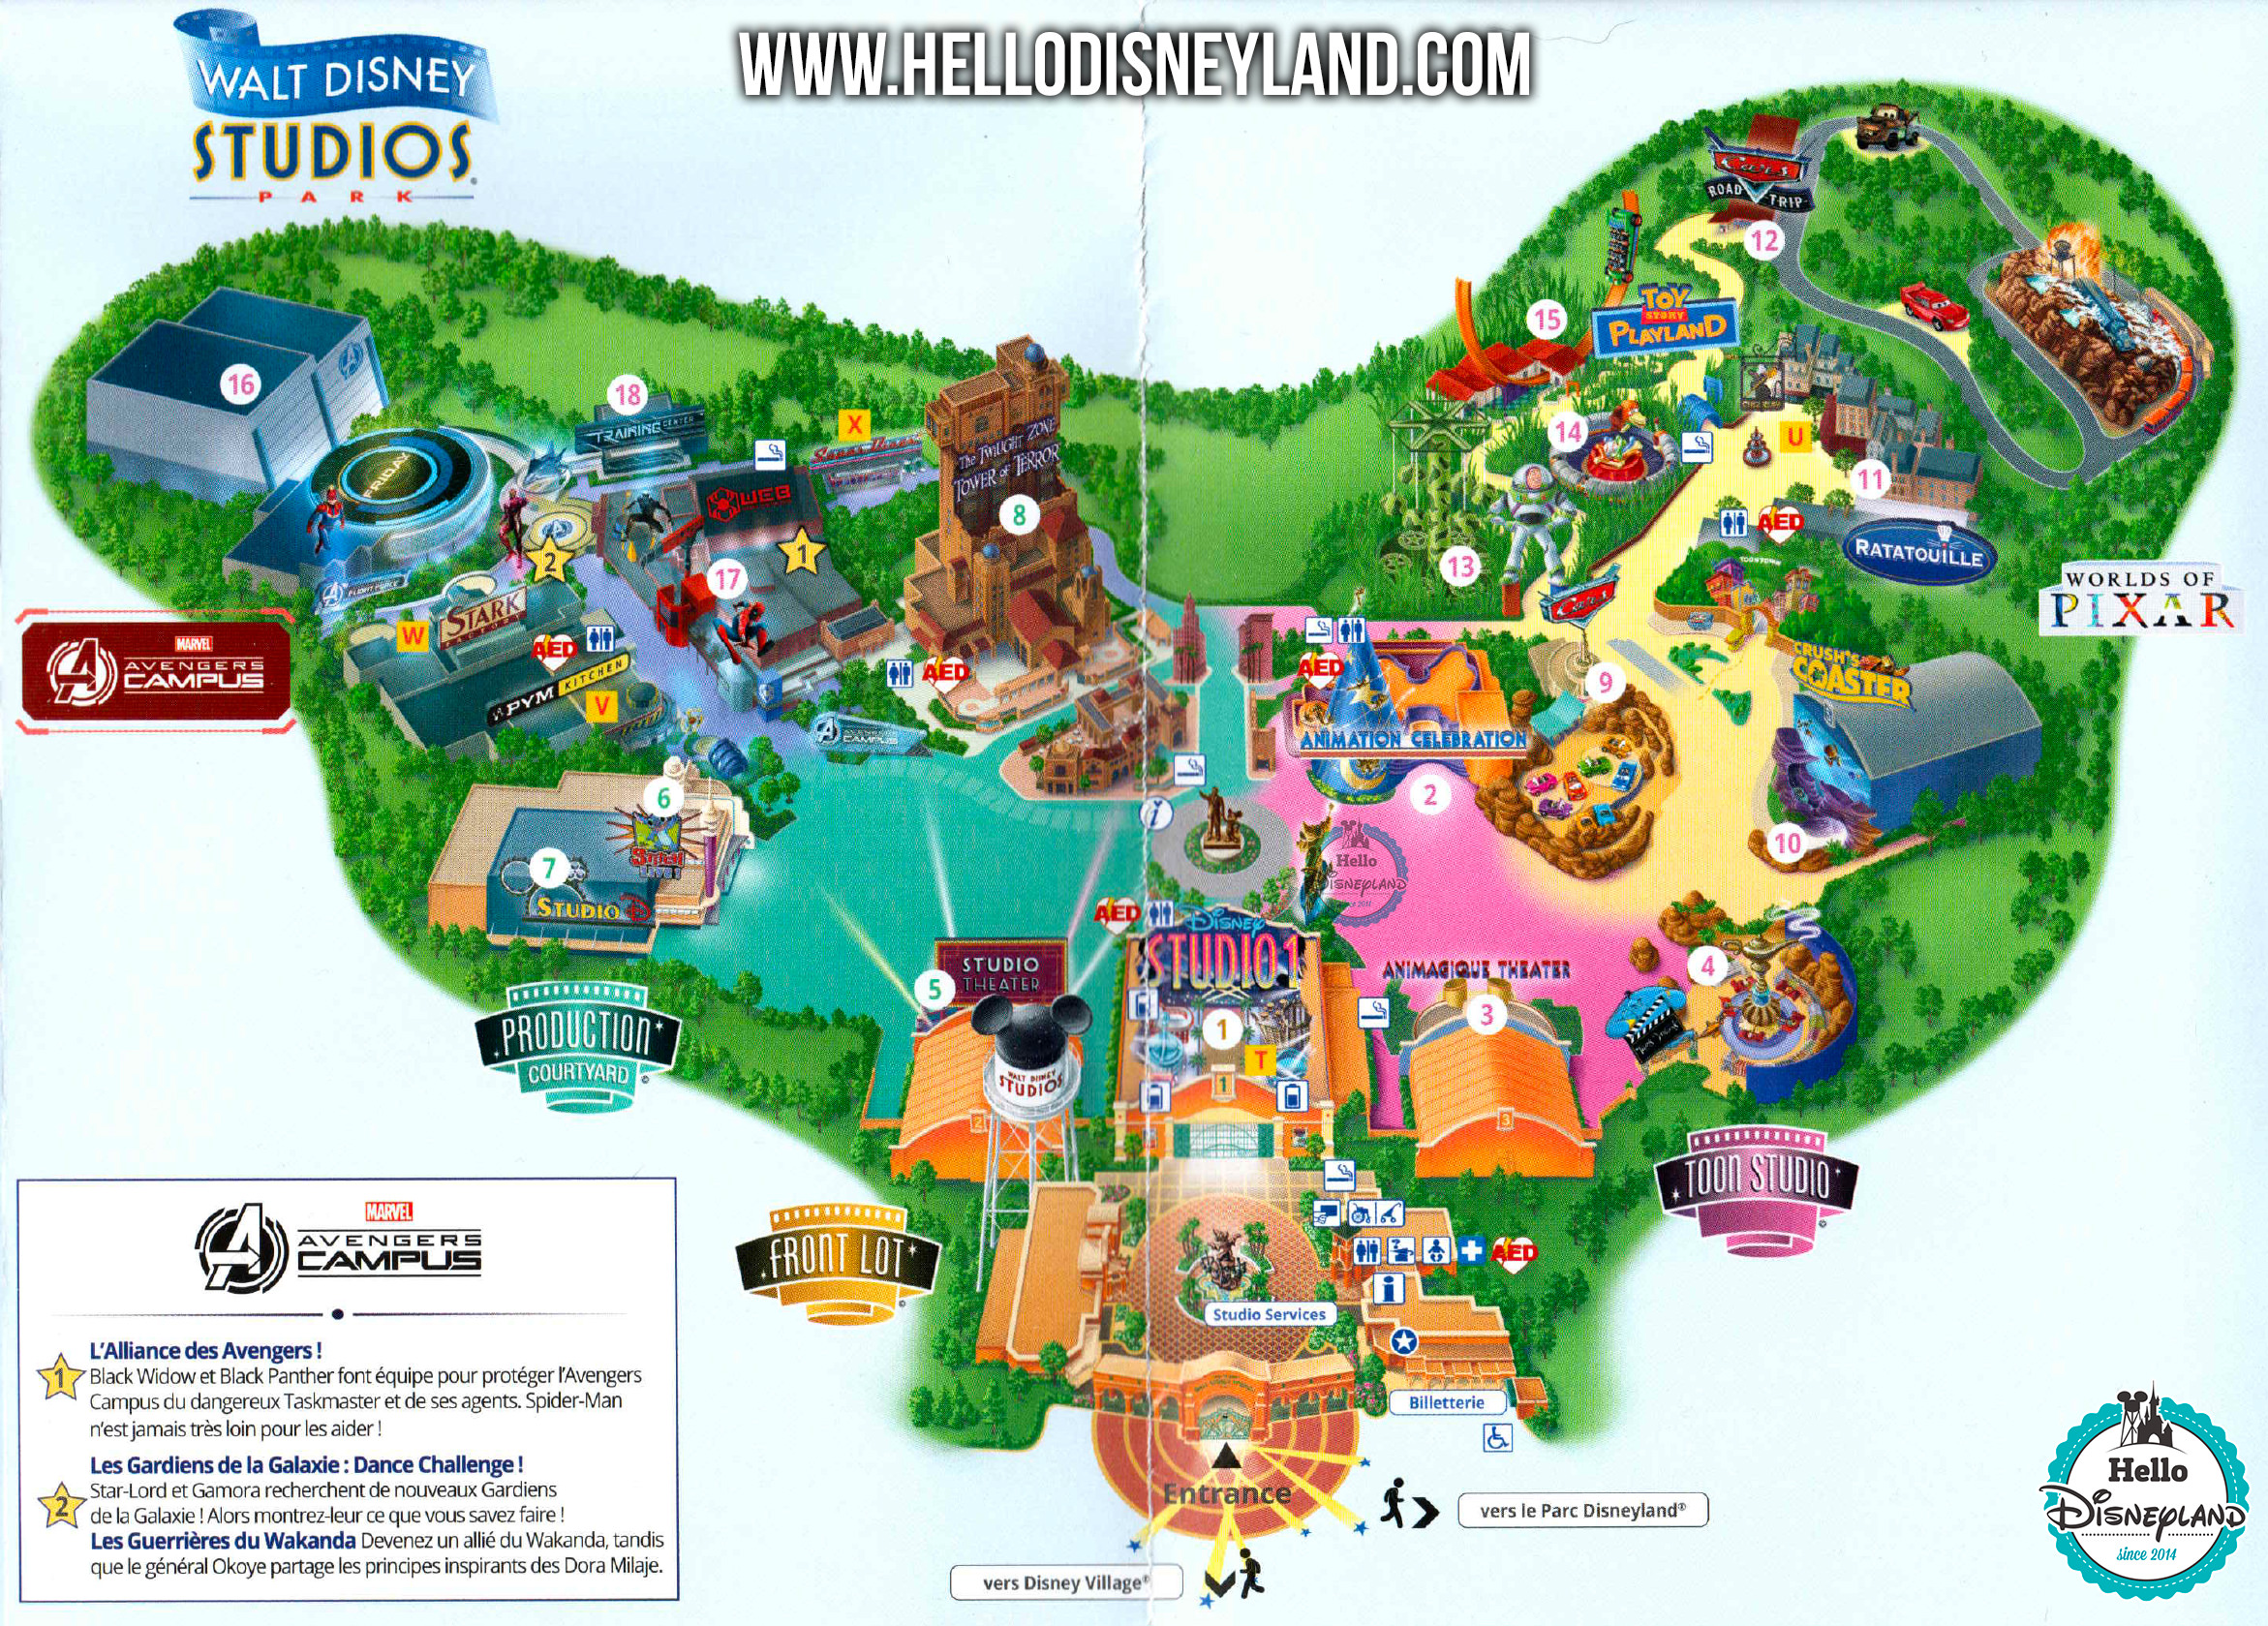 Plan Parcs Disneyland Paris - Parc Walt Disney Studios